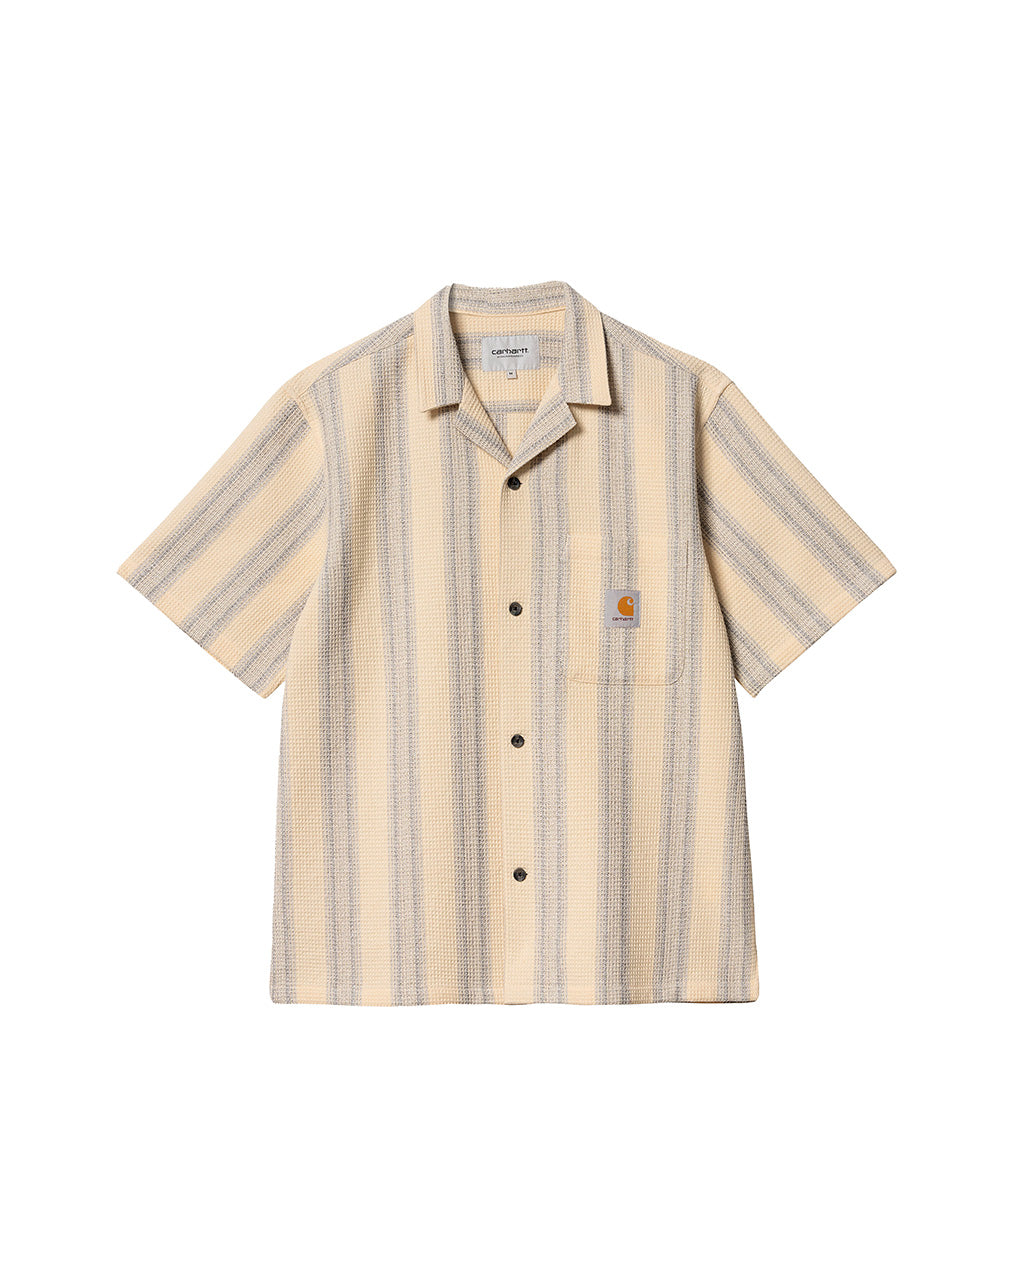 Carhartt WIP S/S Dodson Shirt